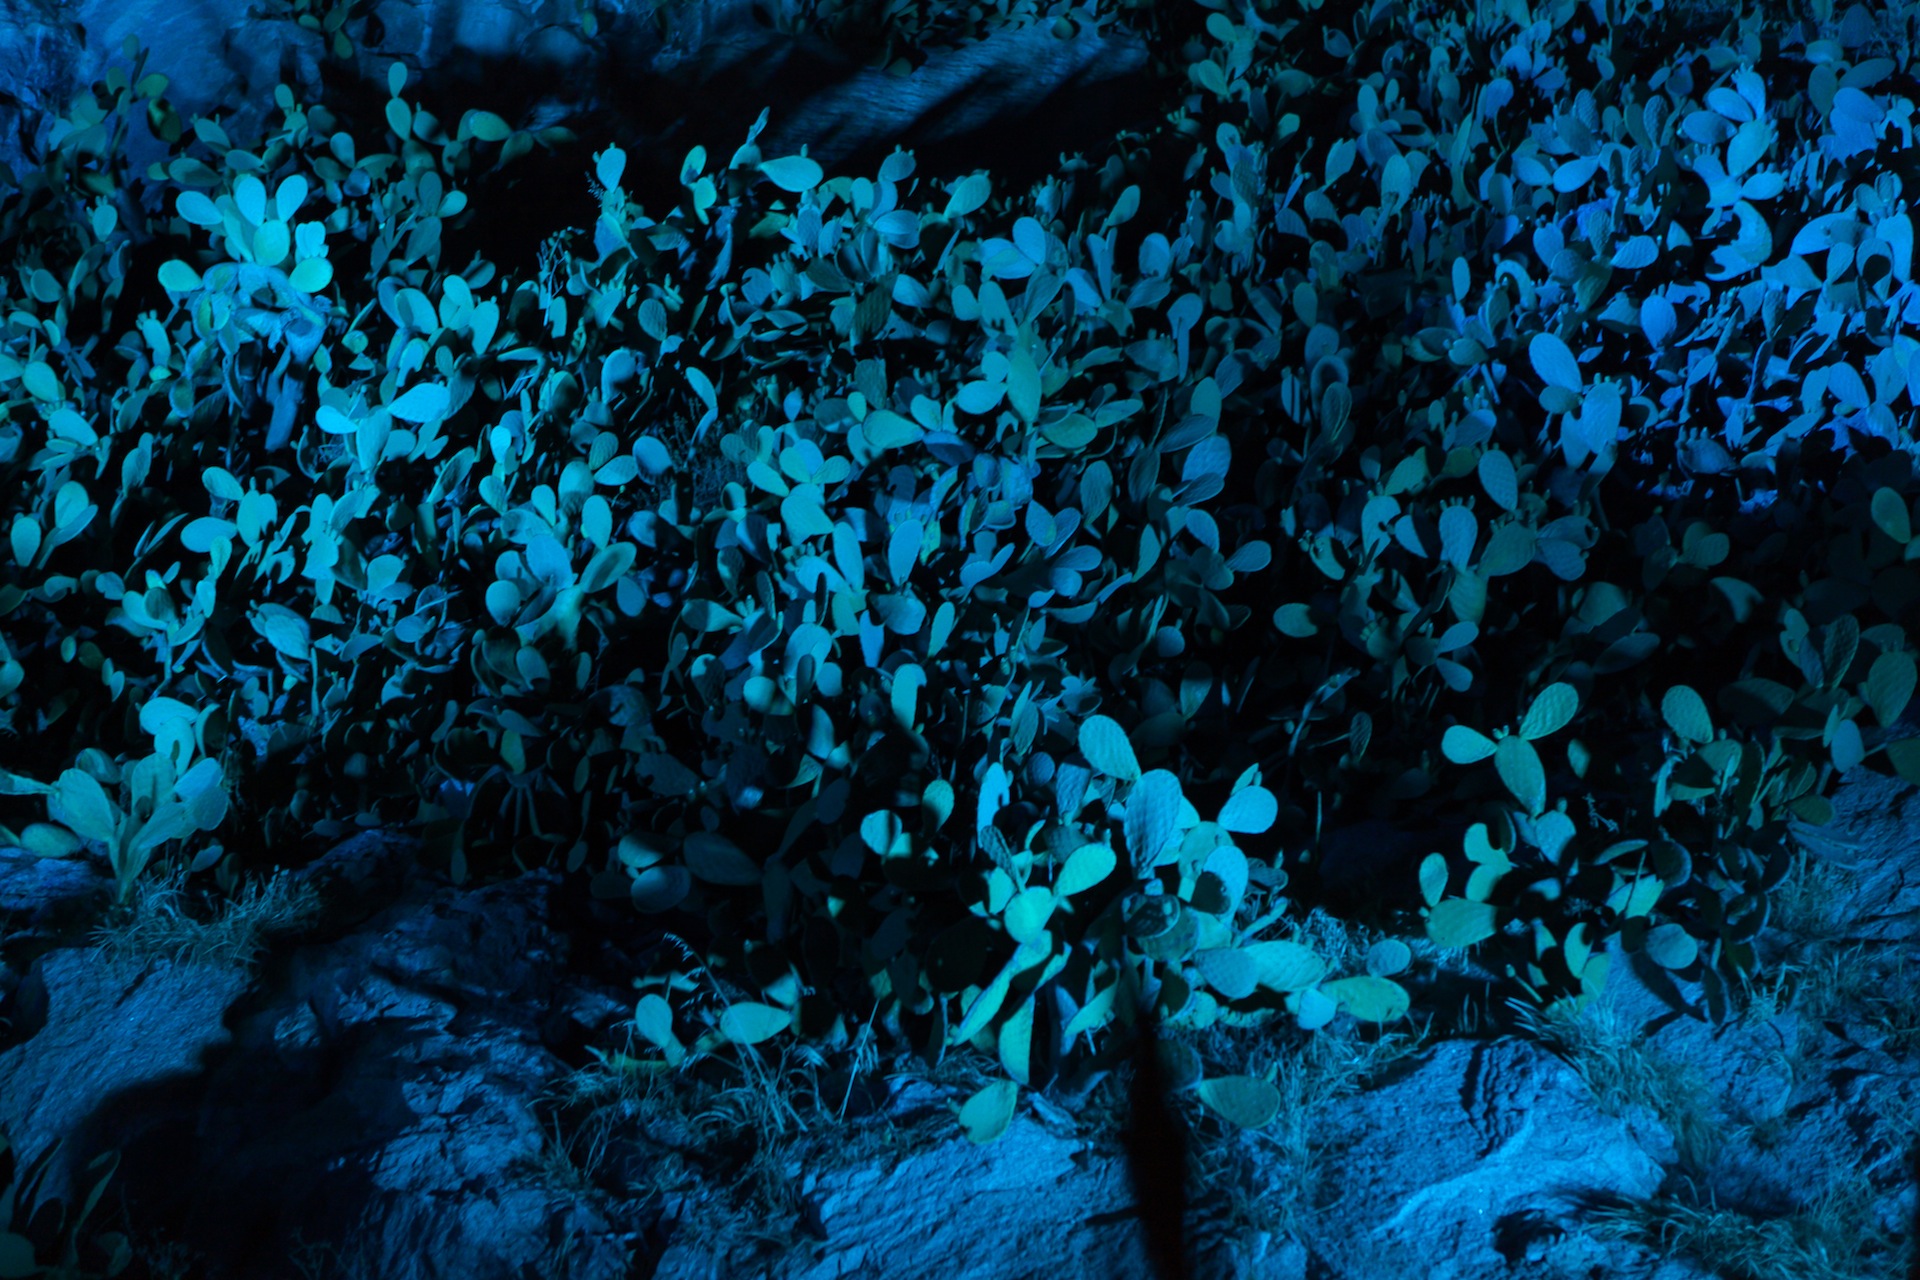 Calvi On The Rocks - Calvi by night